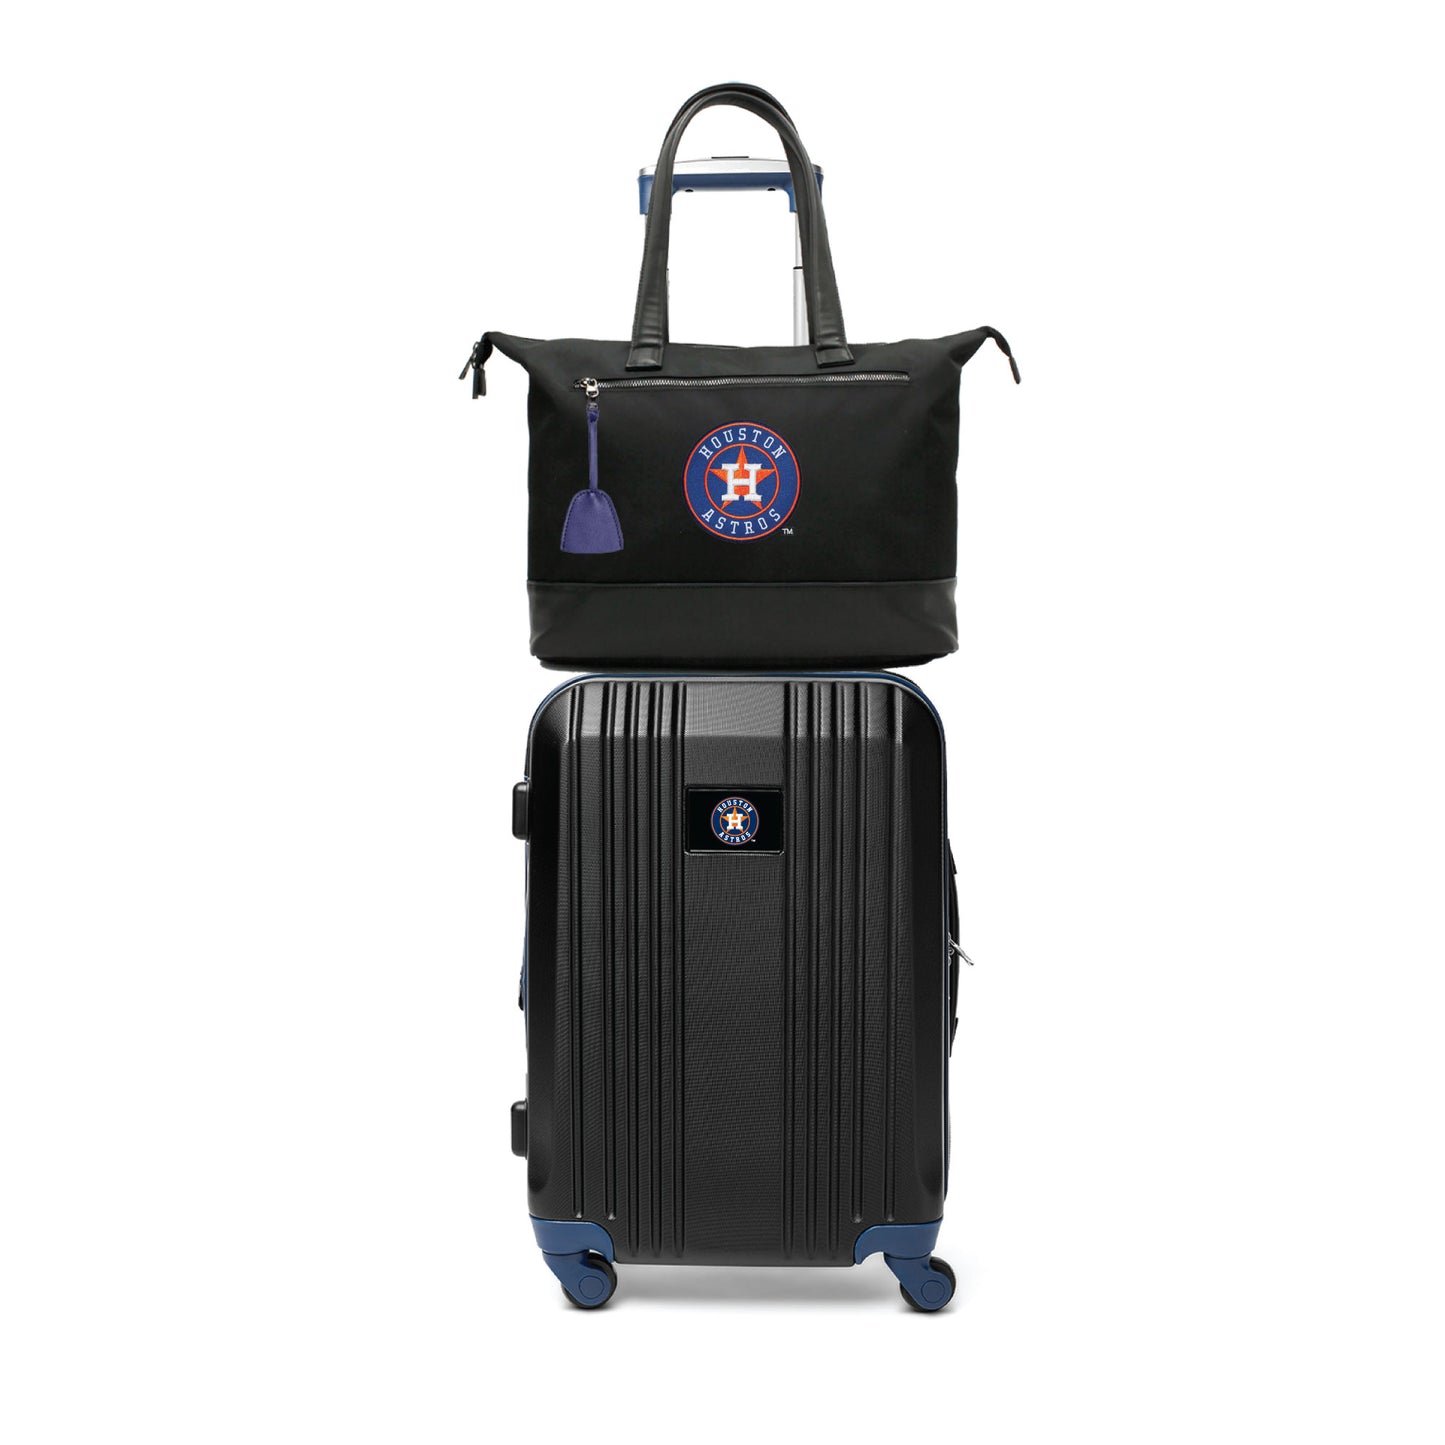 Houston Astros Premium Laptop Tote Bag and Luggage Set